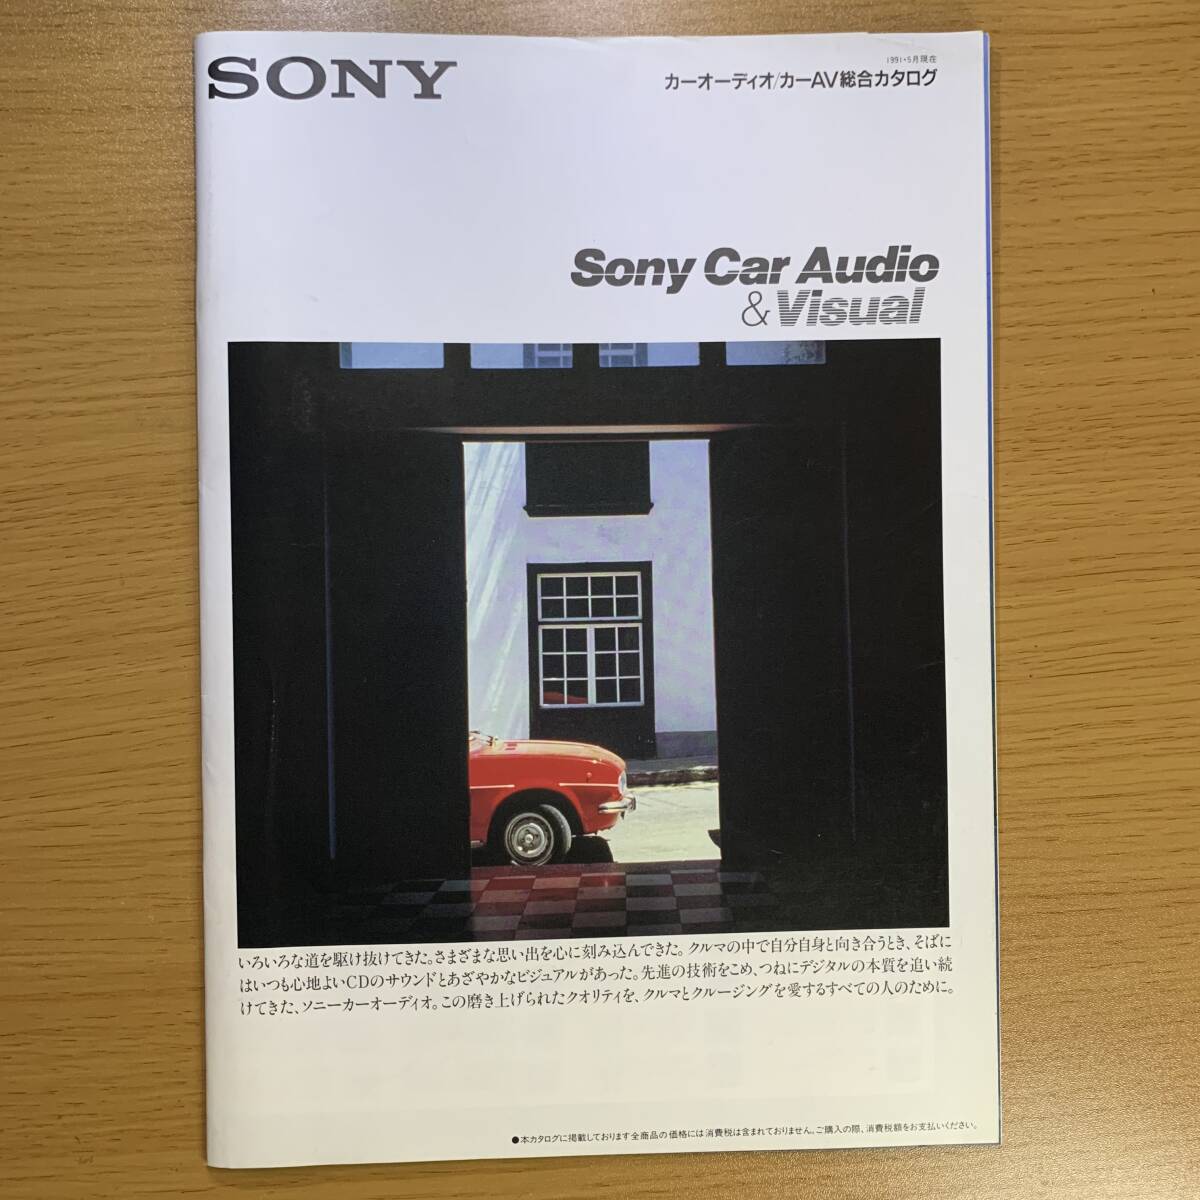 ソニー カーオーディオ・カーAVカタログ/SONY CAR AUDIO CAR AV CATALOG_画像1